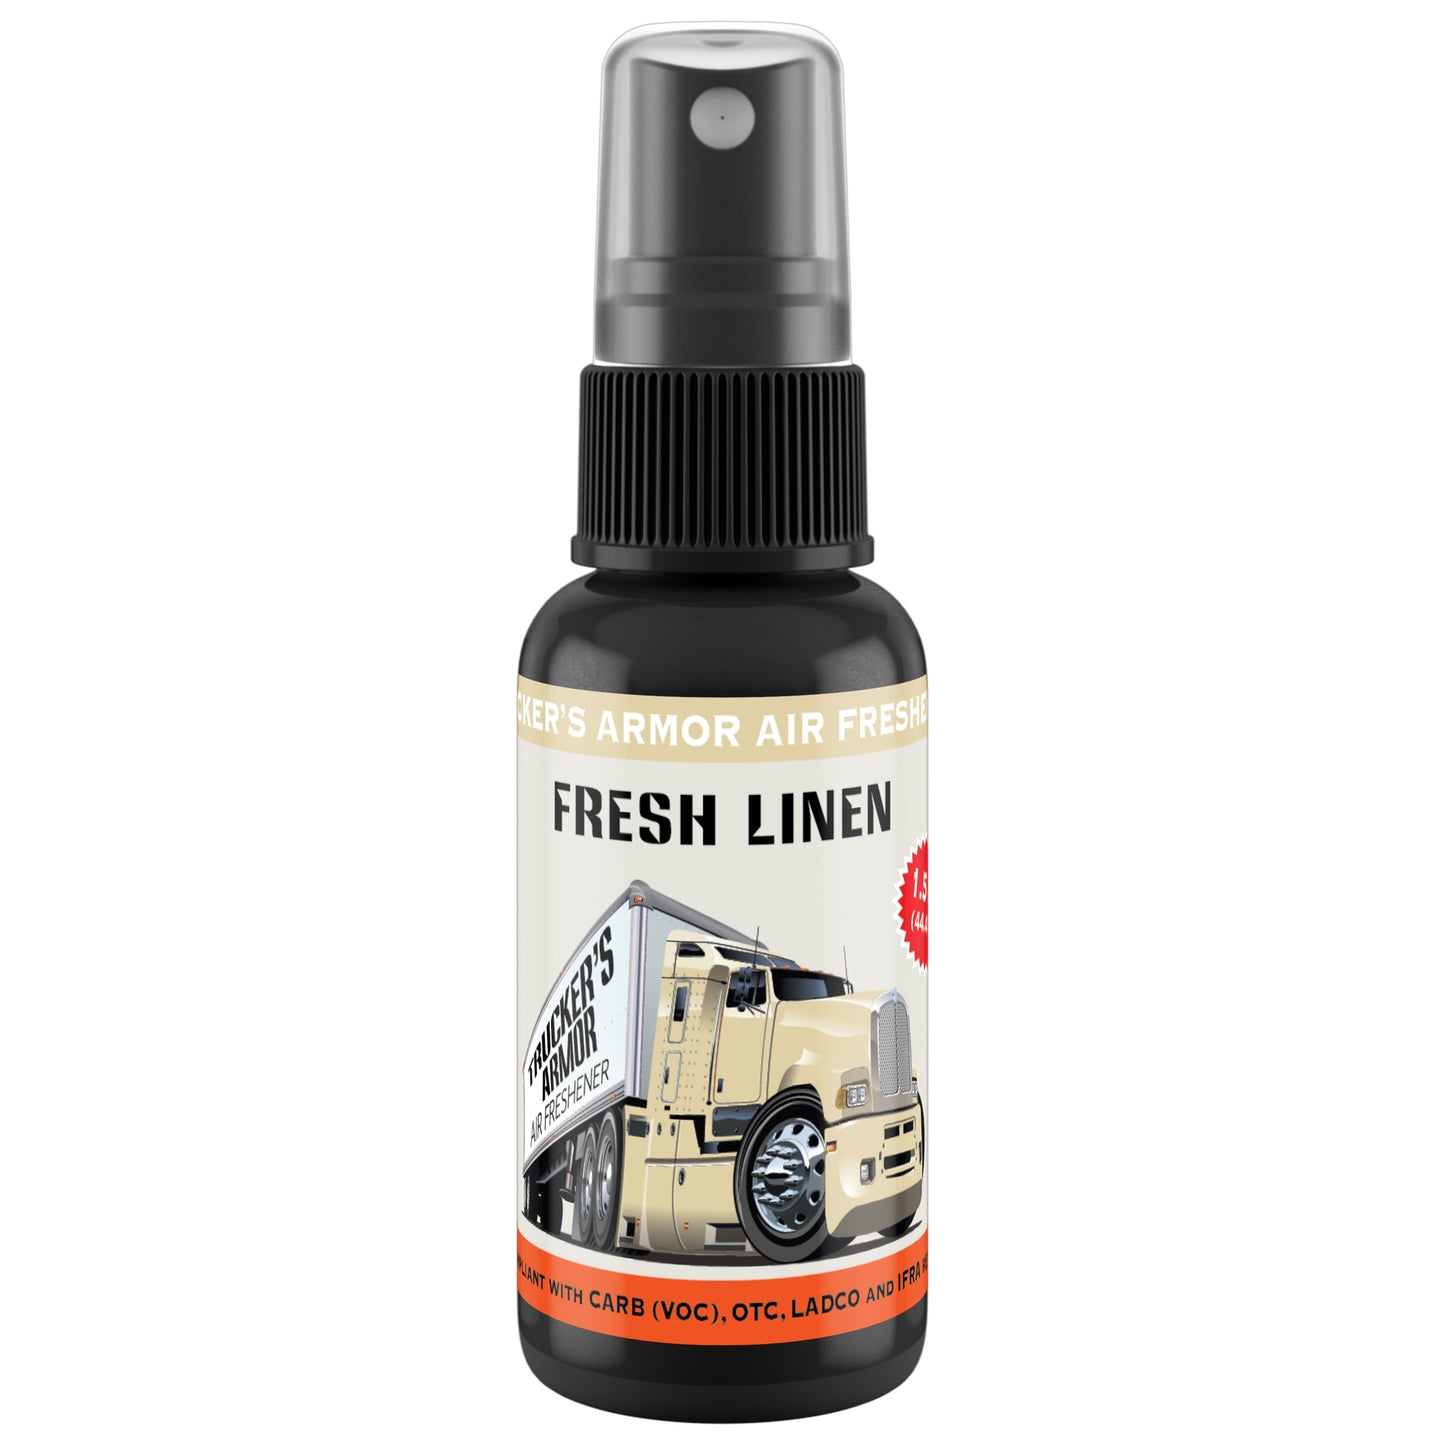 Trucker's Armor Air Freshener - Fresh Linen Scent